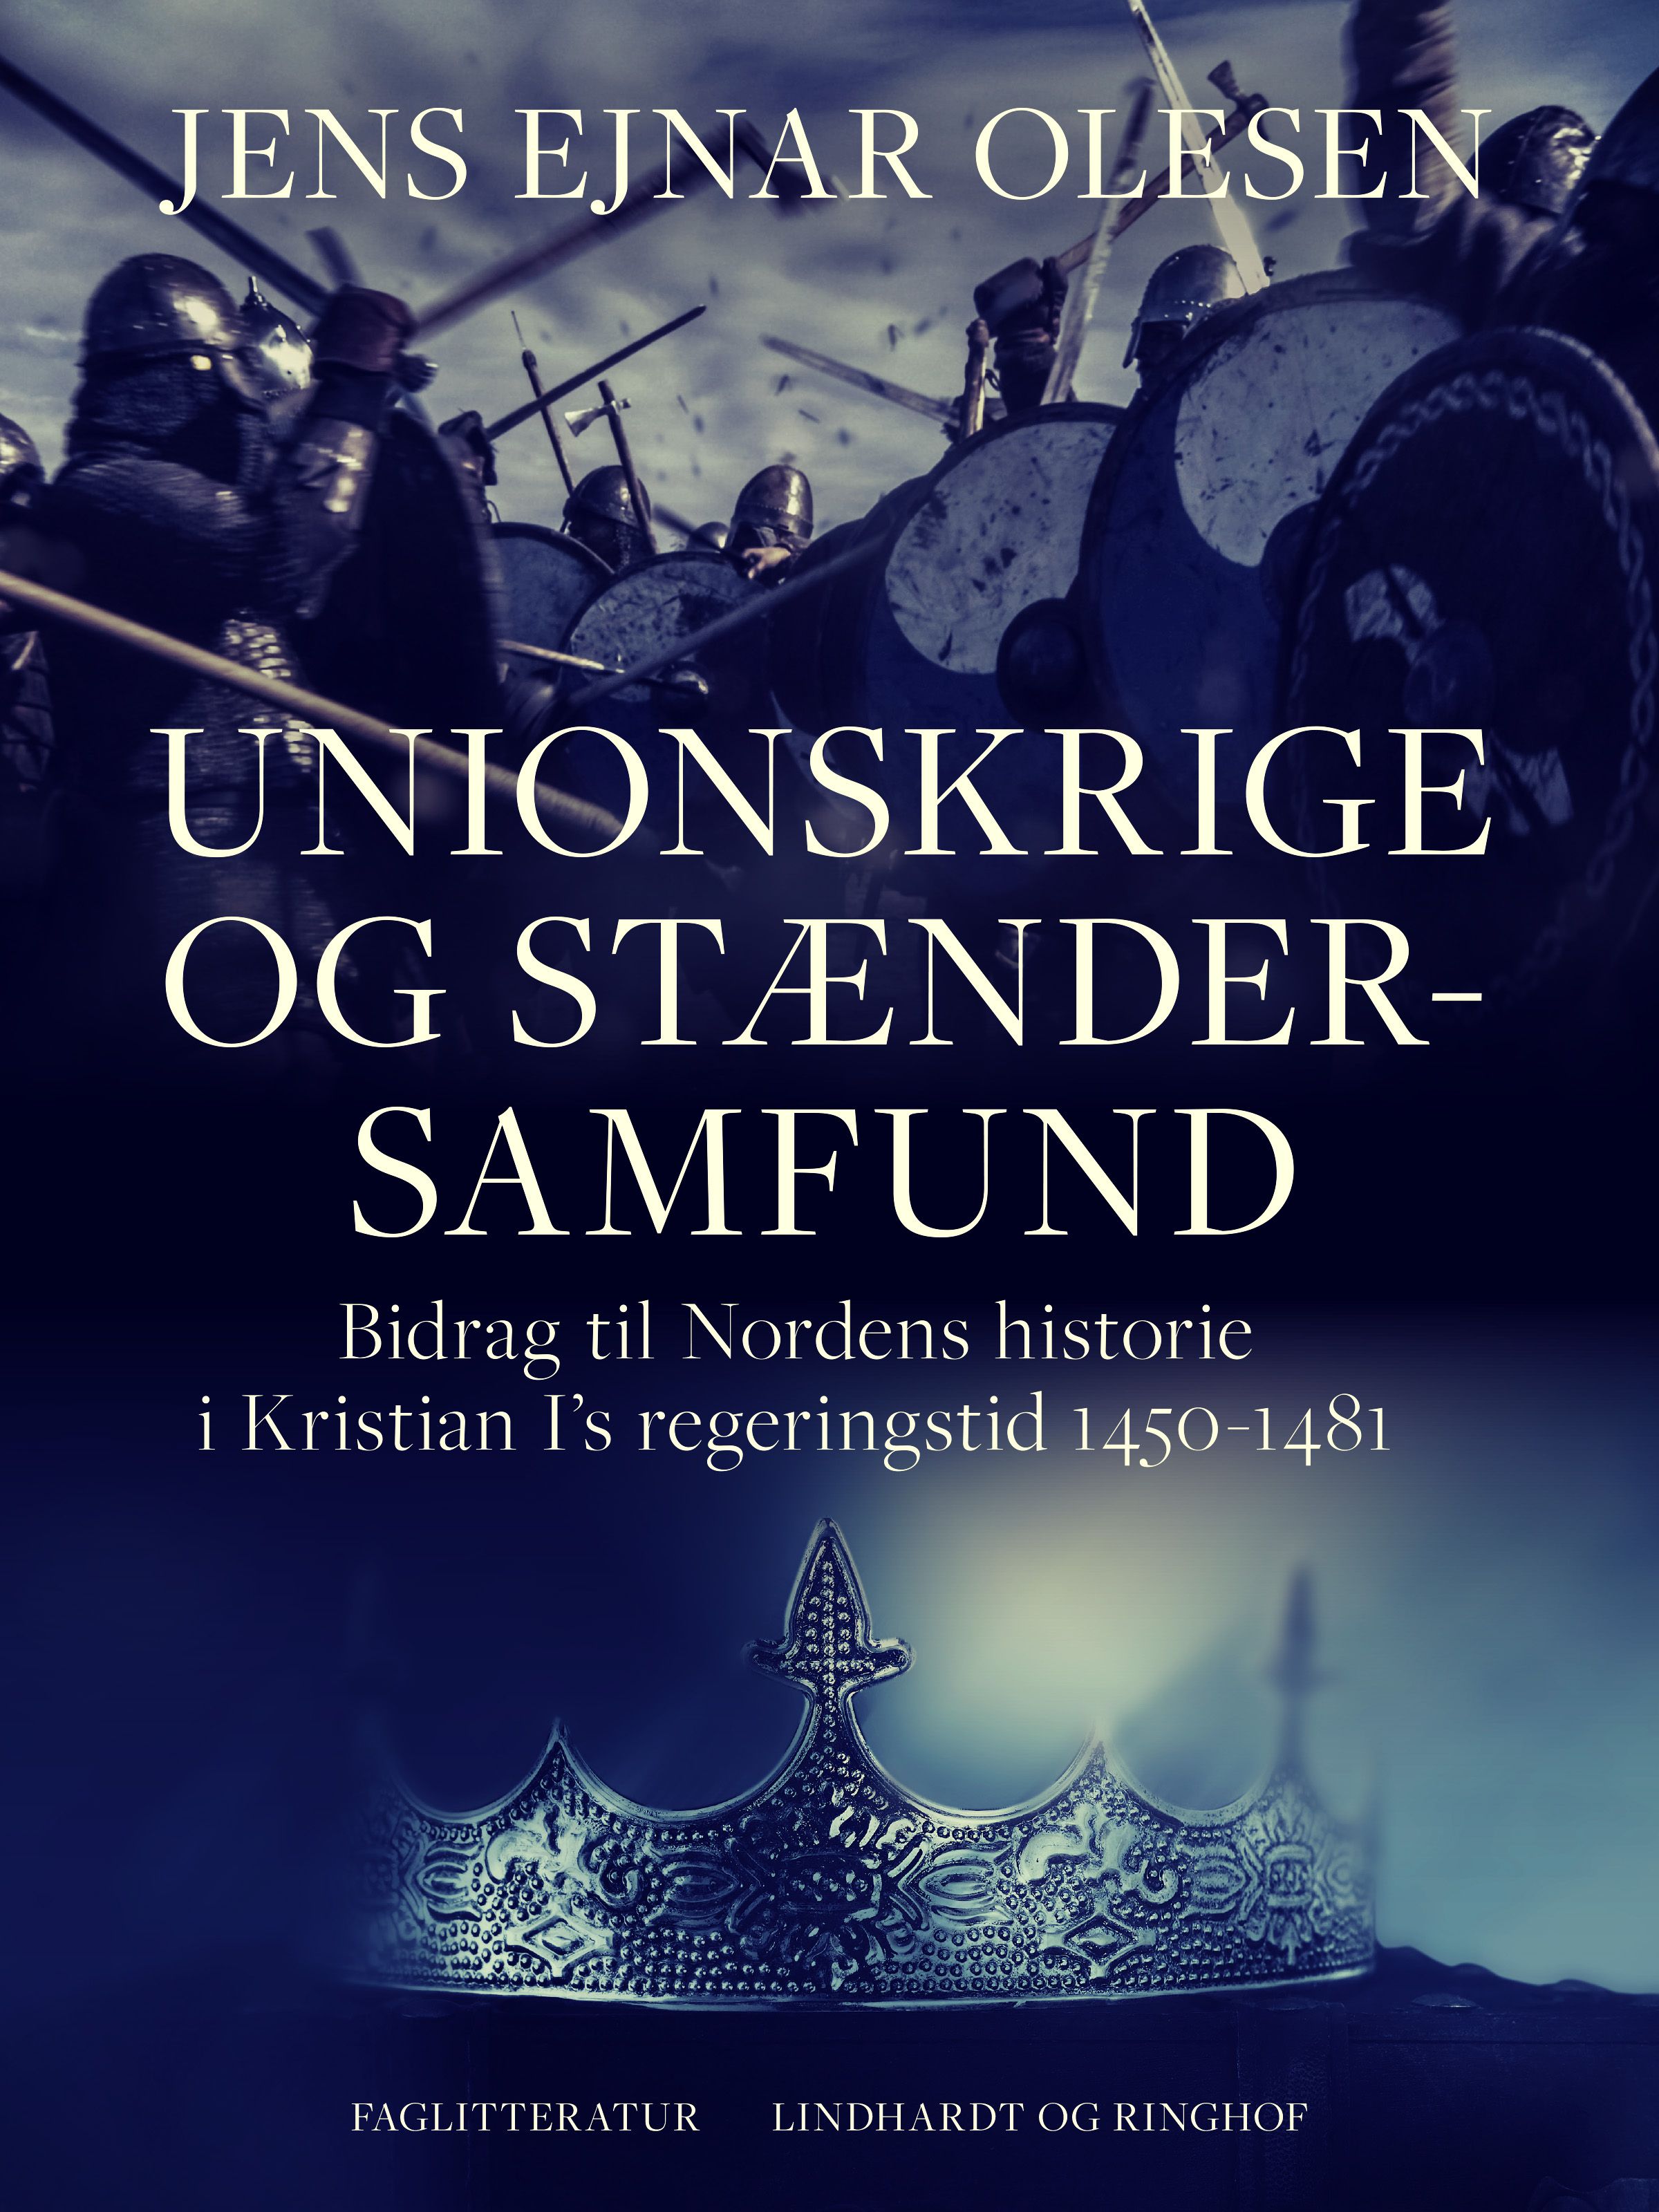 Unionskrige og stændersamfund. Bidrag til Nordens historie i Kristian I's regeringstid 1450-1481, eBook by Jens Ejnar Olesen